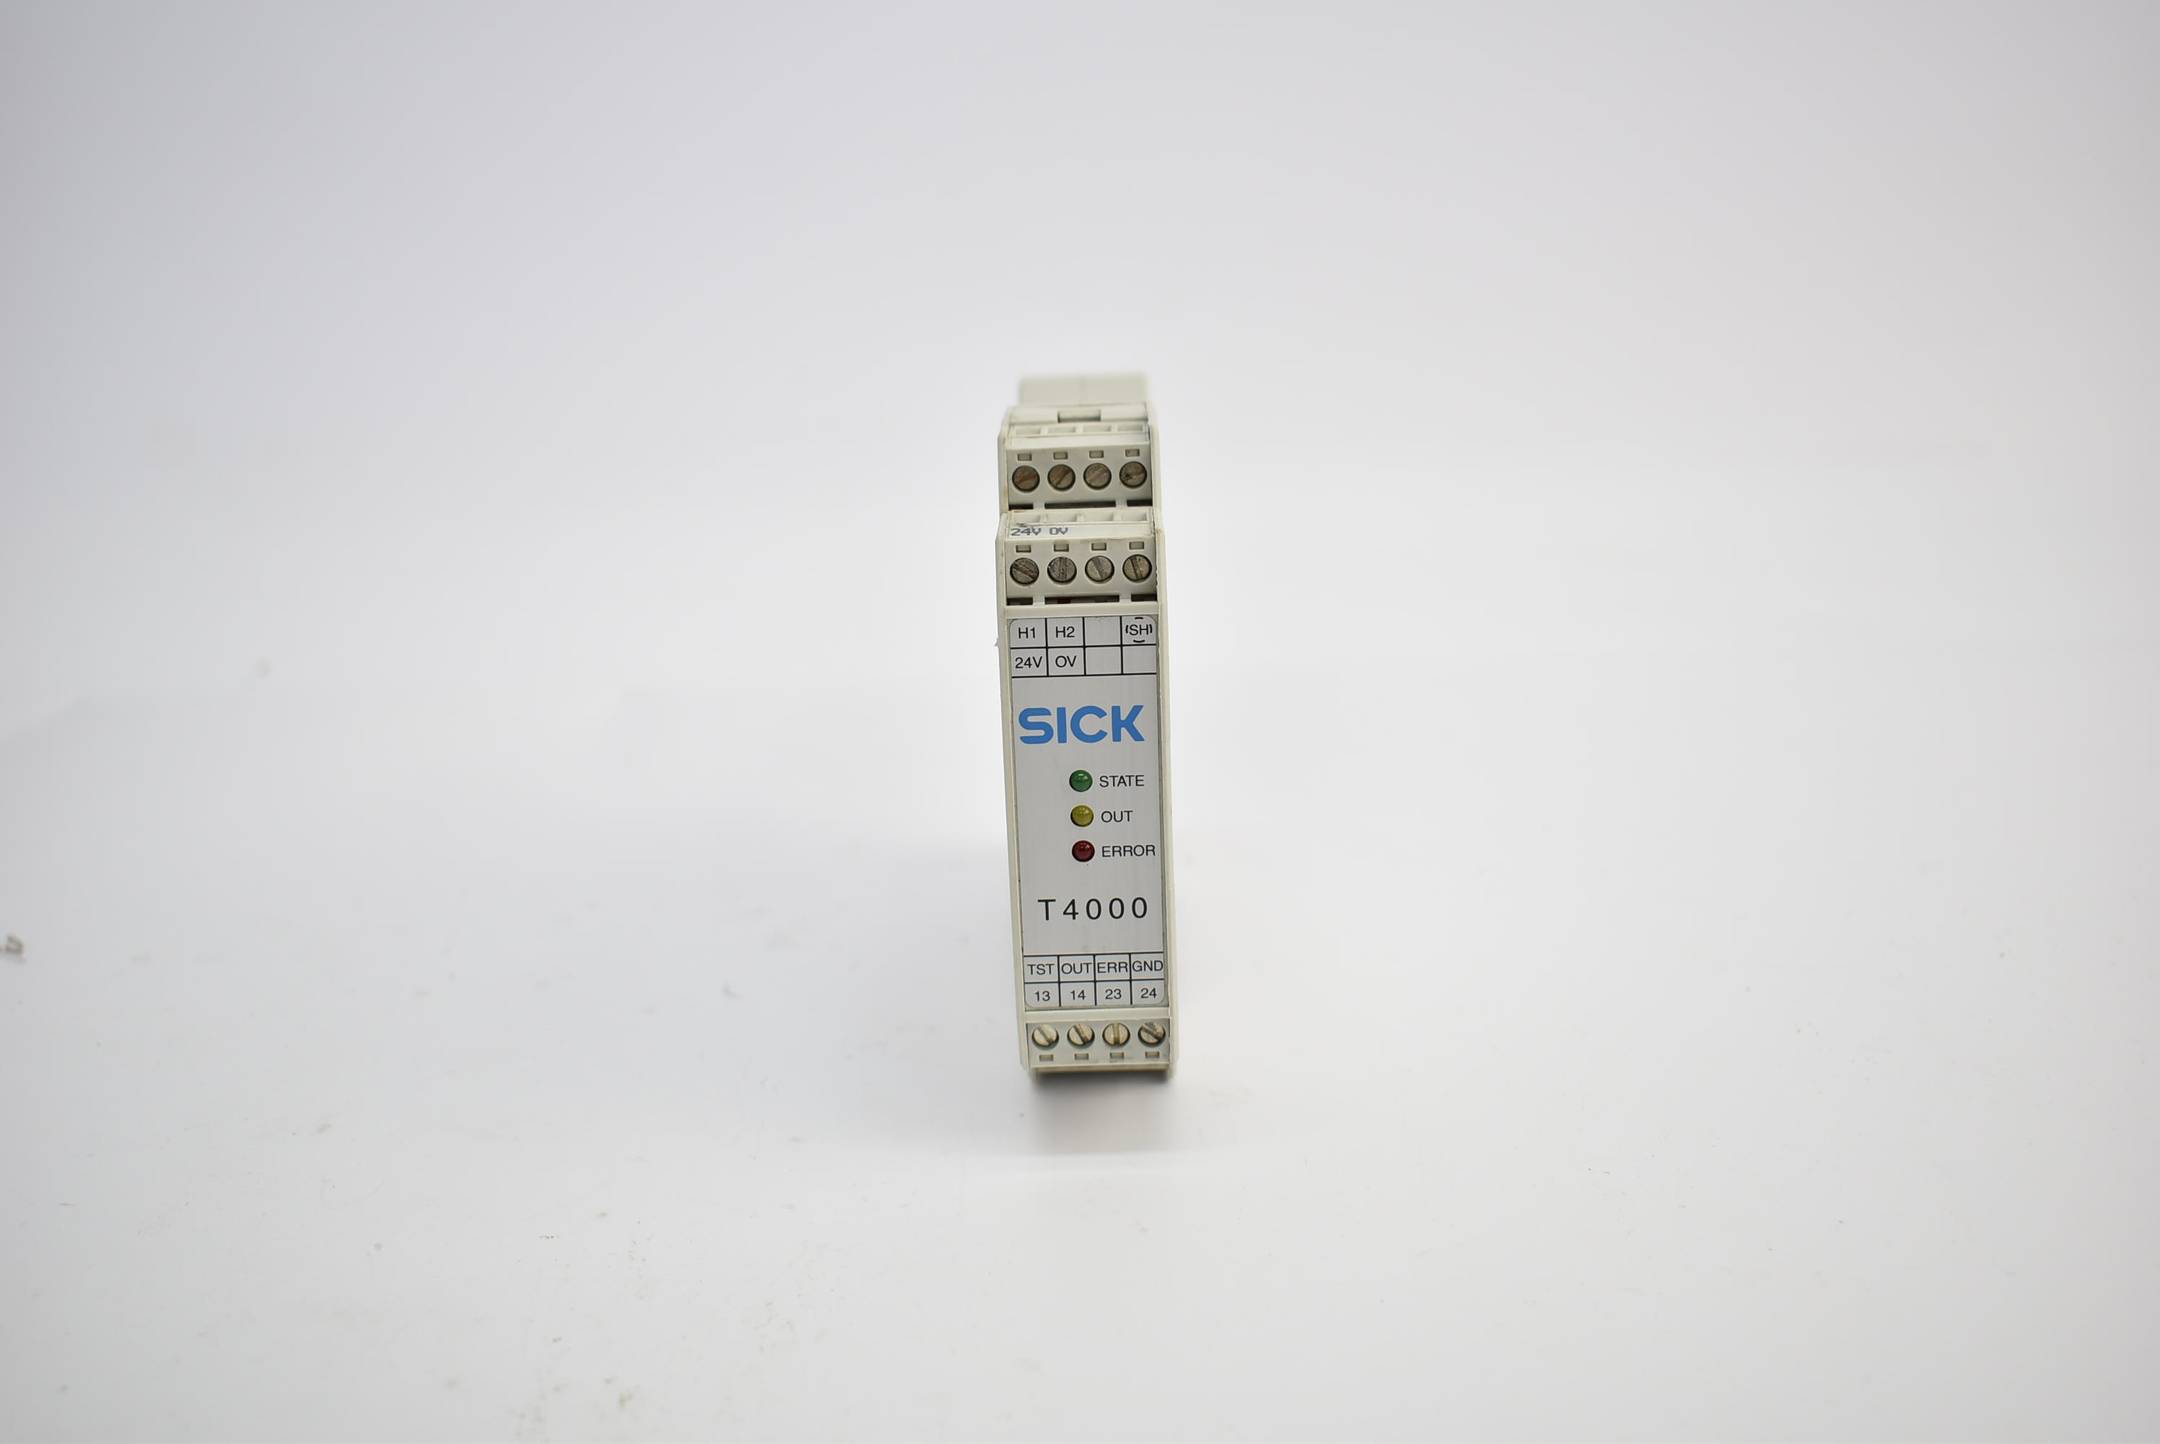 Sick Sicherheitsschalter RFID Auswertungseinheit T4000 ( 6012147 )